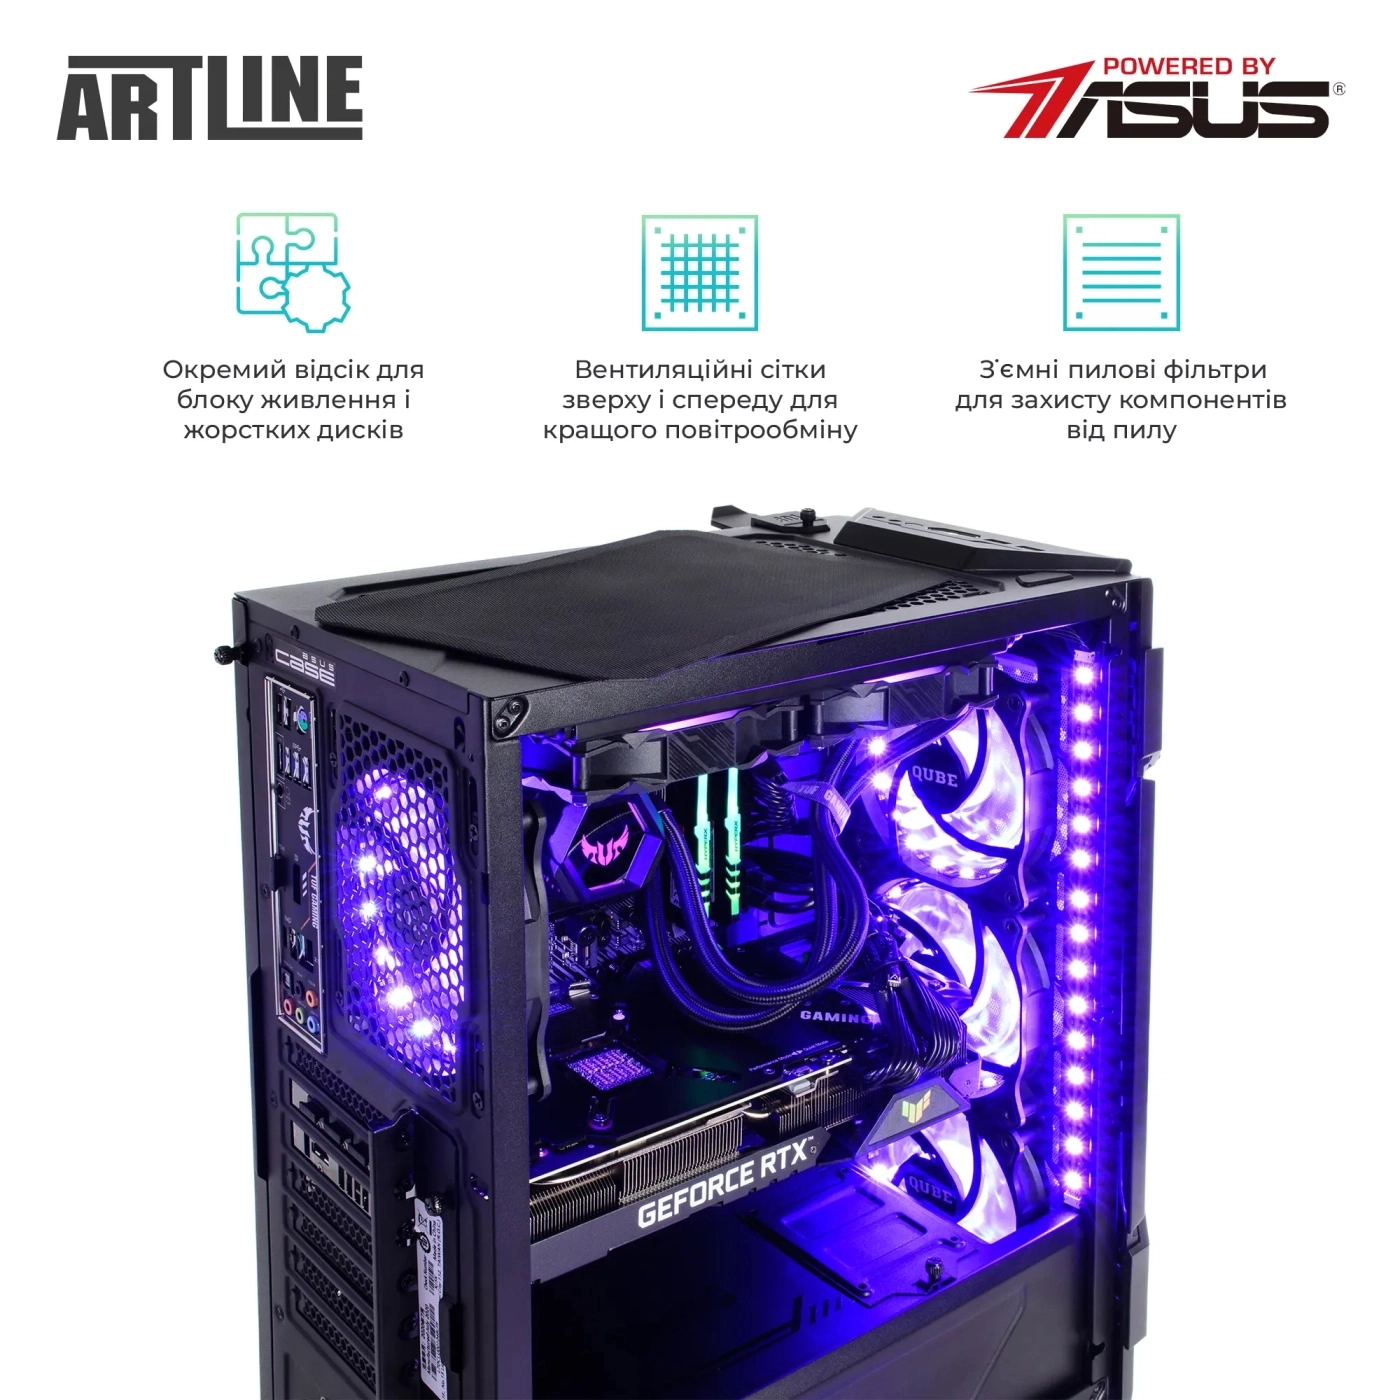 Купить Компьютер ARTLINE Gaming GT301v05 - фото 7